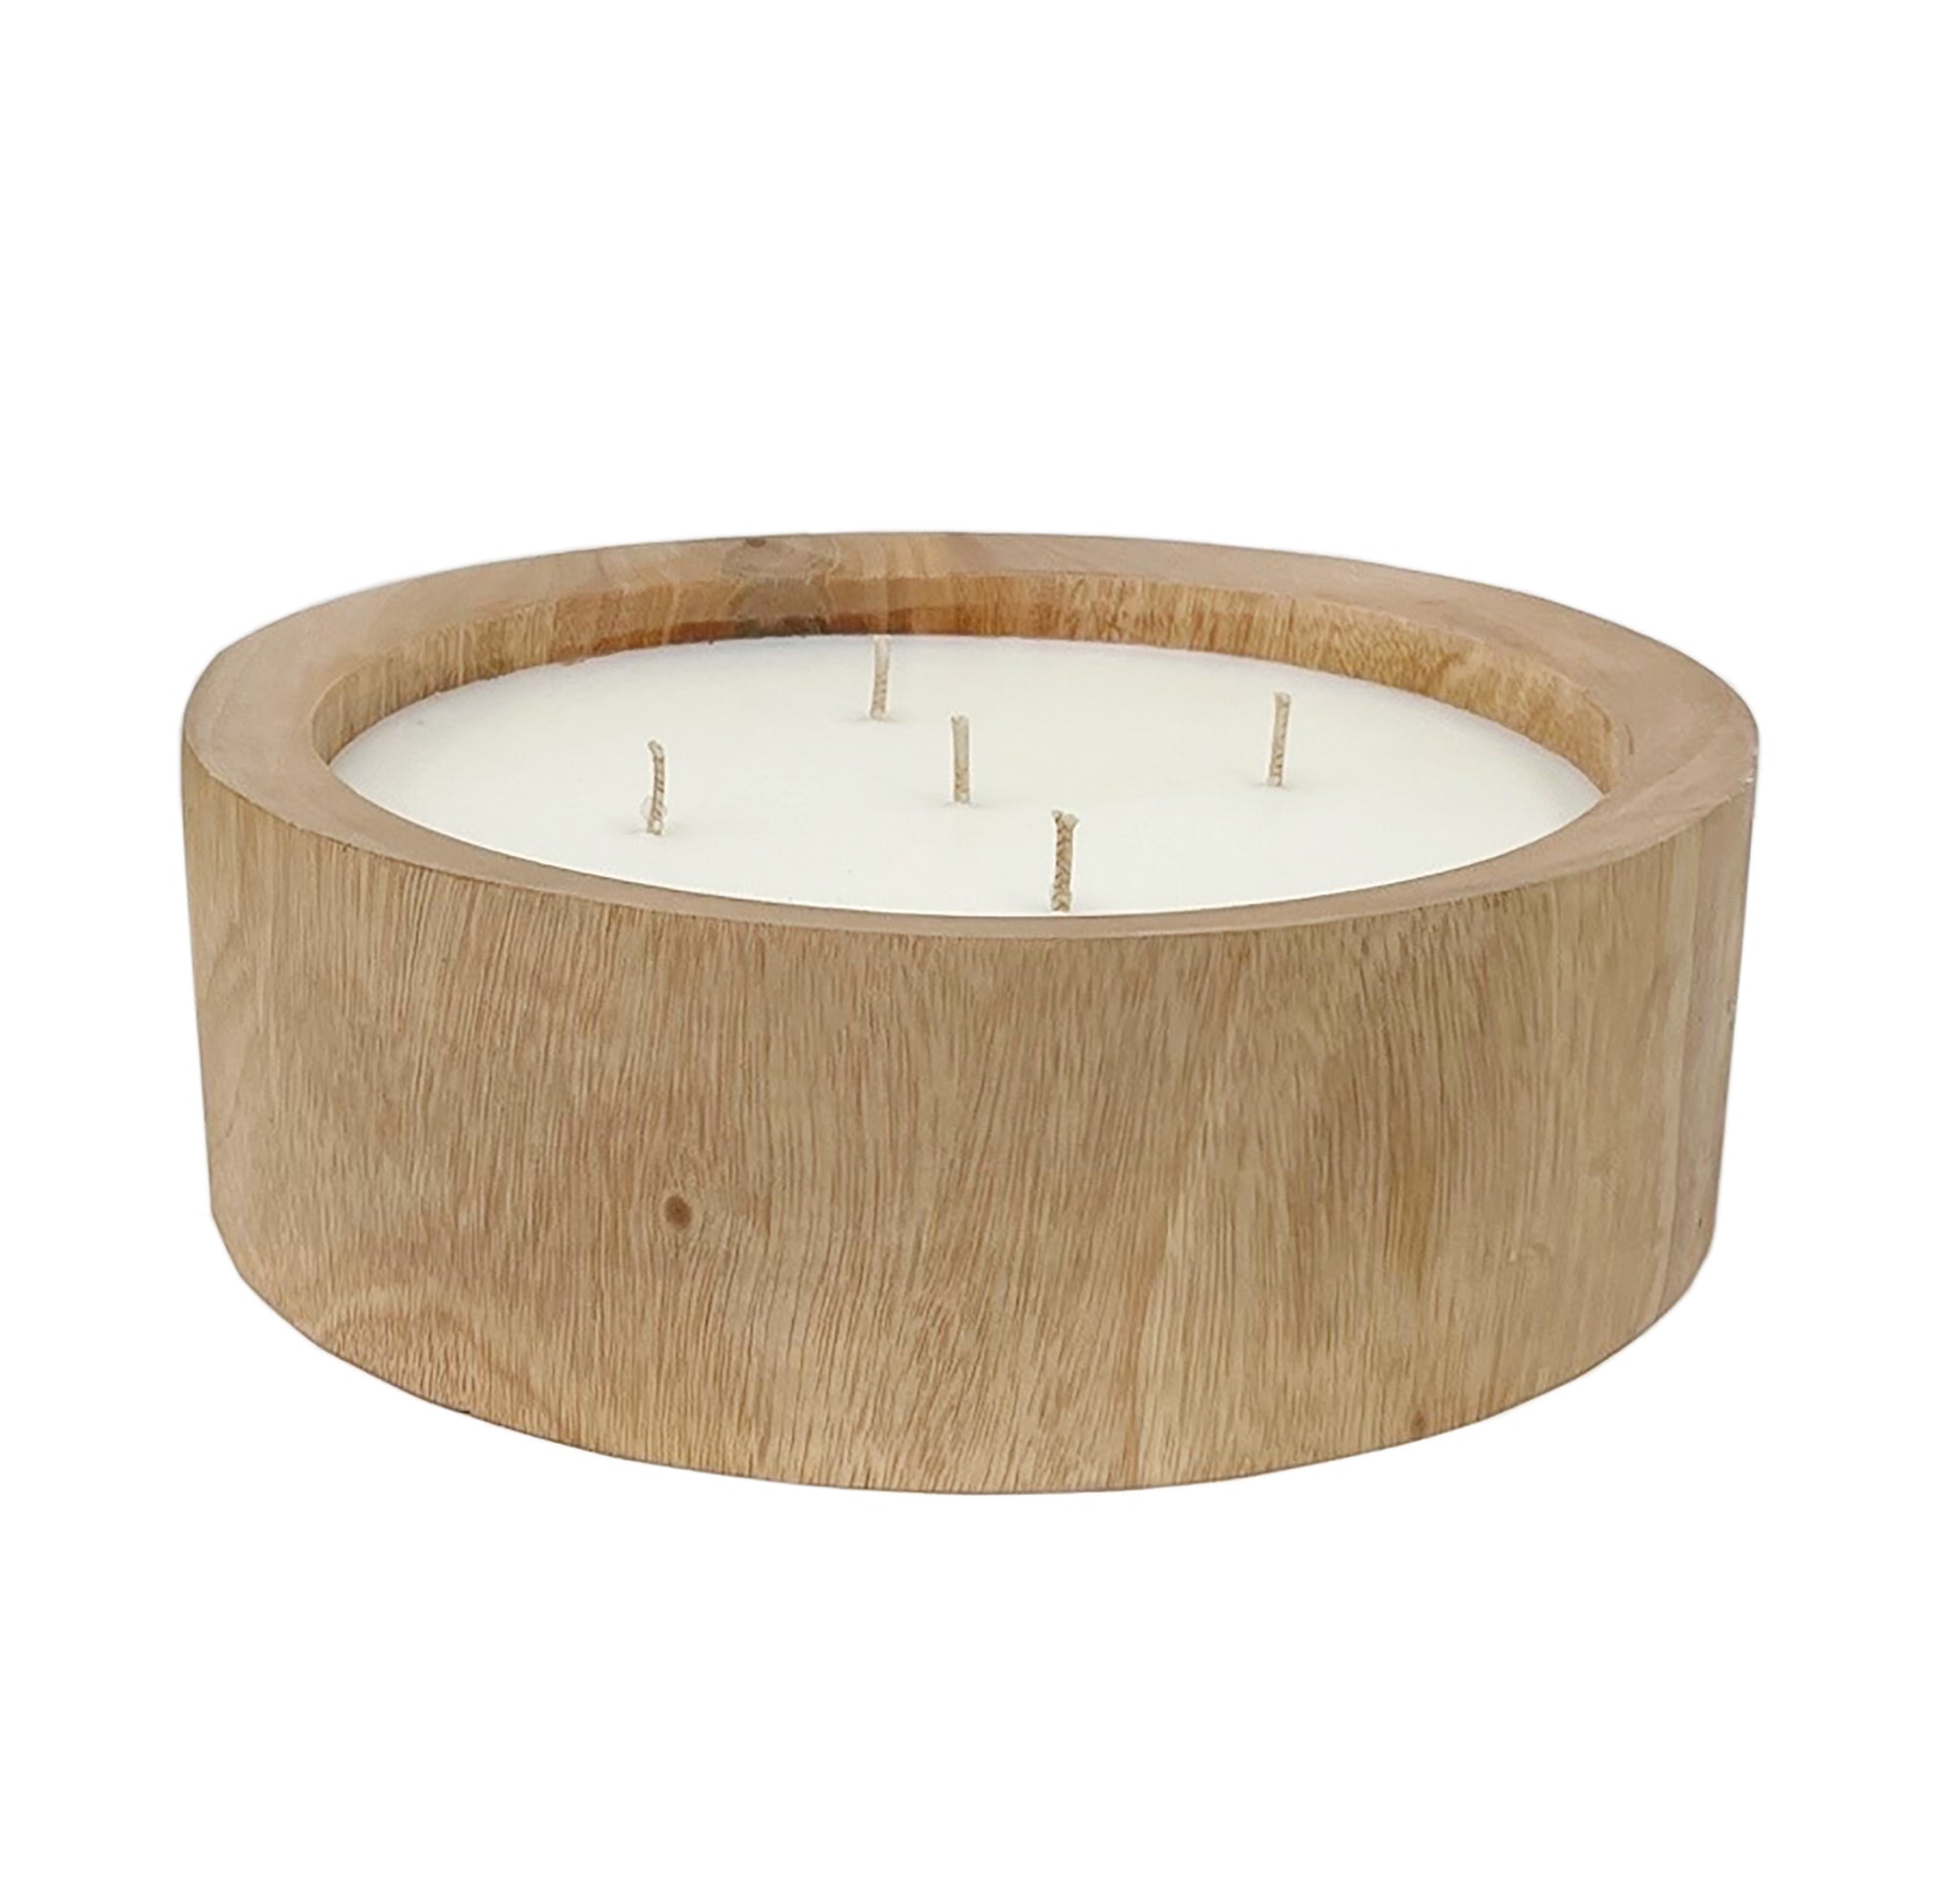 Mahogany Circular Wood Candle